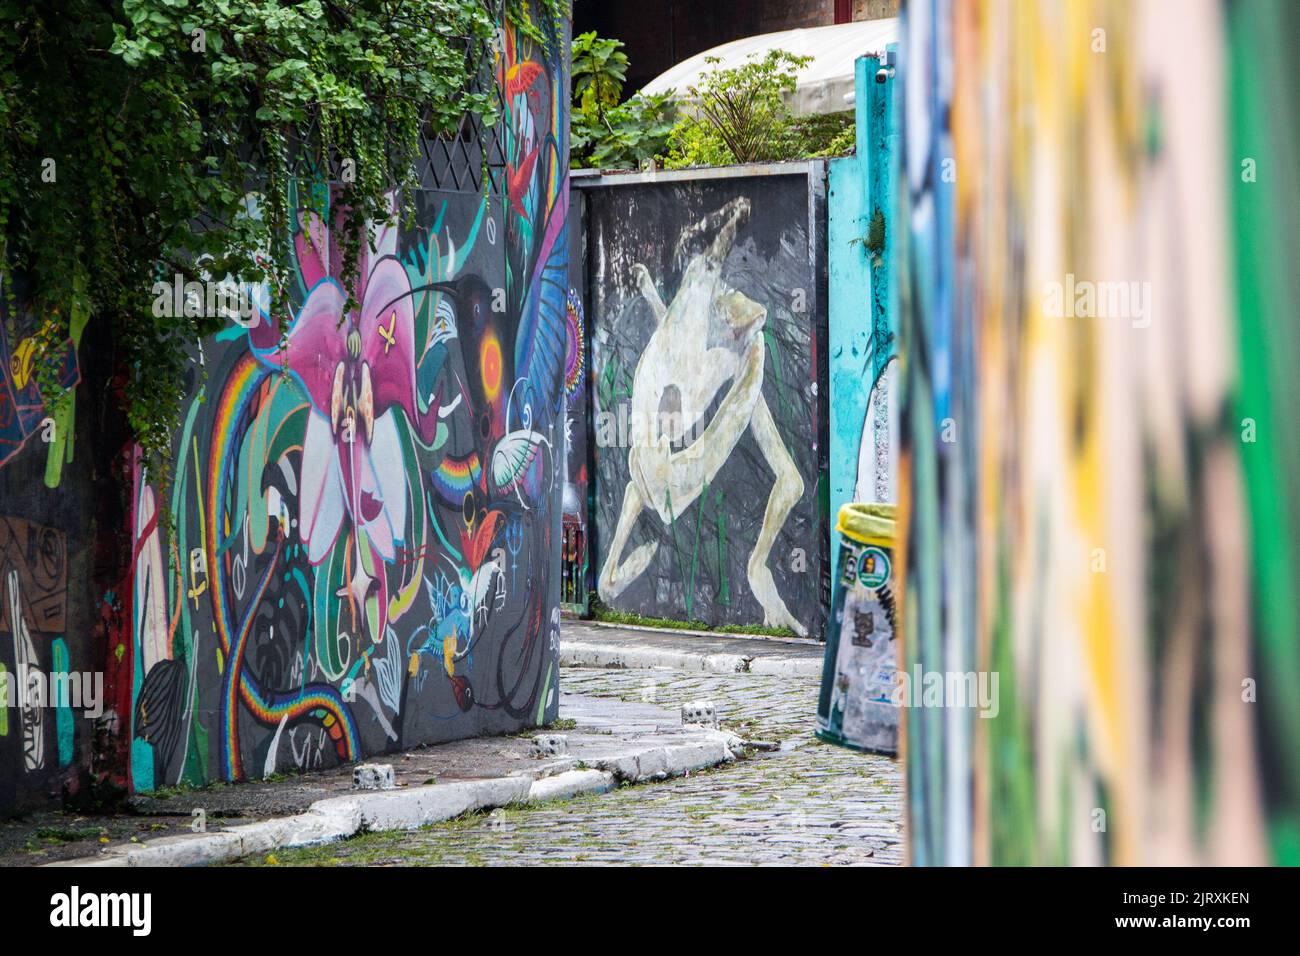 Batman's Alley, Vila Madalena, São Paulo Brésil - 16 février 2019 : Batman's Alley est un plat de graffiti situé à Vila Madalena, une ne bohème Banque D'Images